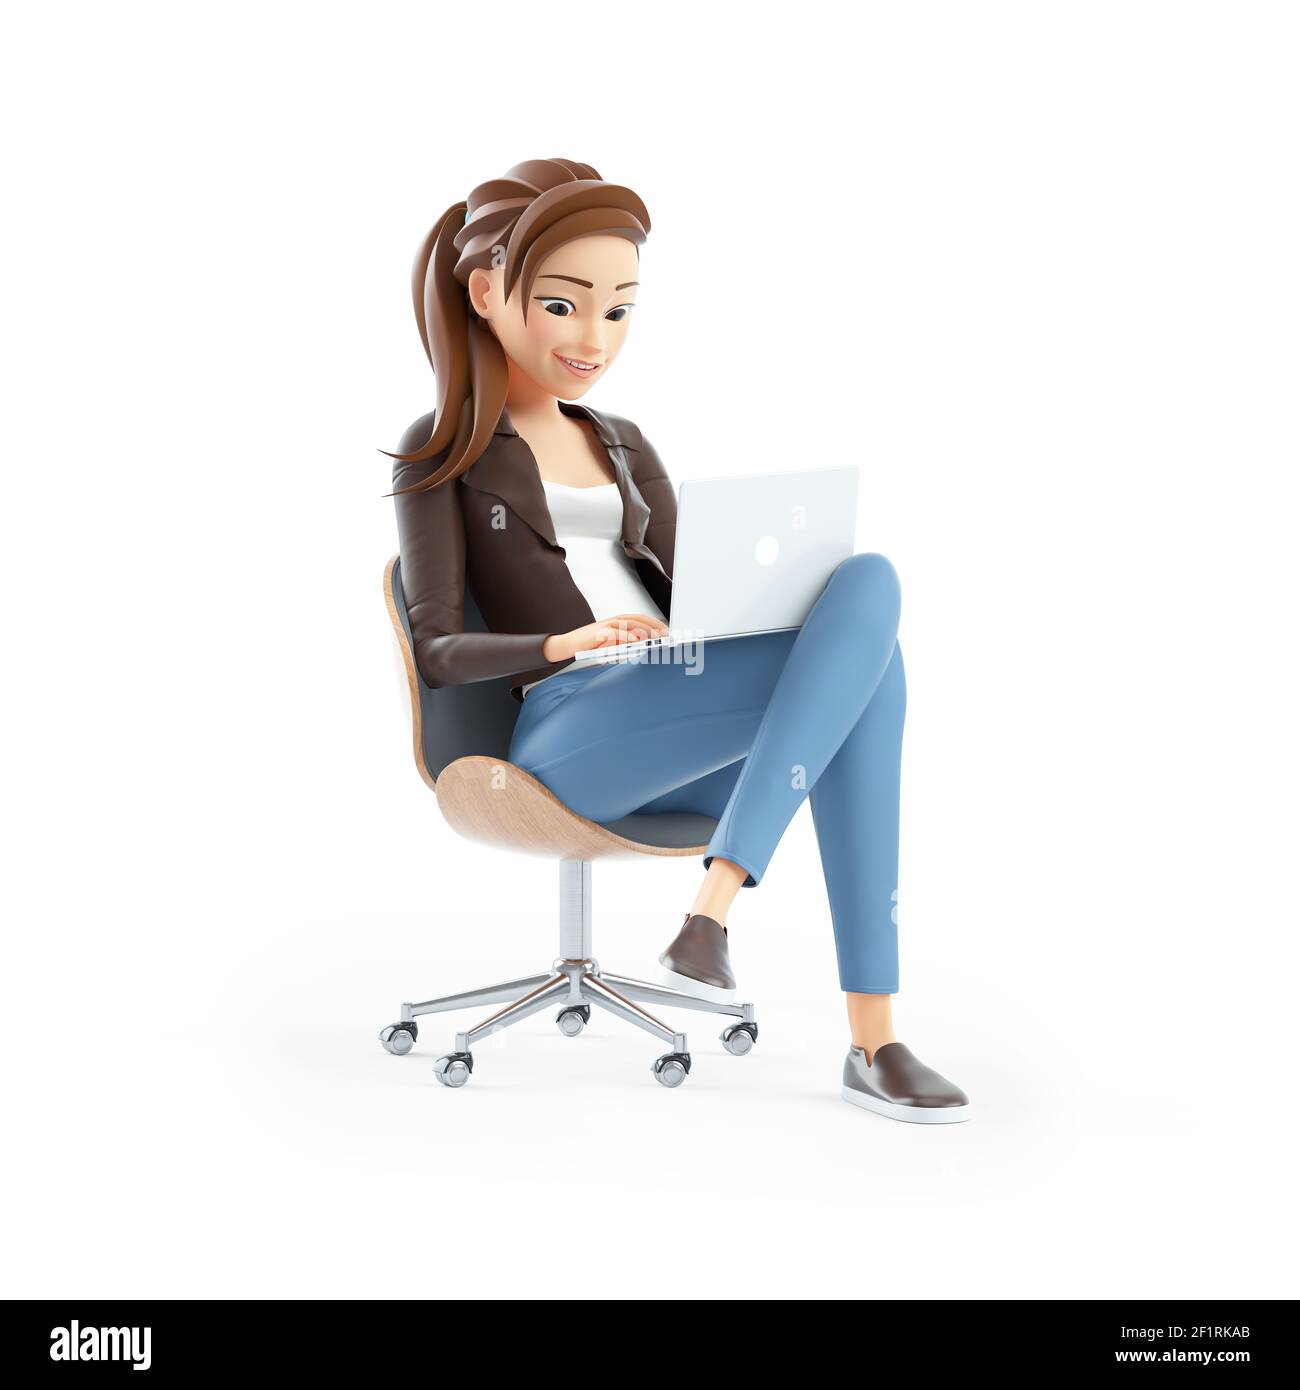 Ngắm một tác phẩm hoạt hình 3D vô cùng đặc sắc, với phụ nữ trong hình bỗng trở nên sống động và hiện hữu. Cô ấy ngồi trên một chiếc ghế và đang sáng tạo cùng chiếc máy tính xách tay mình. Hãy nhấn vào hình để chiêm ngưỡng cảnh tượng đầy tuyệt vời này nhé.